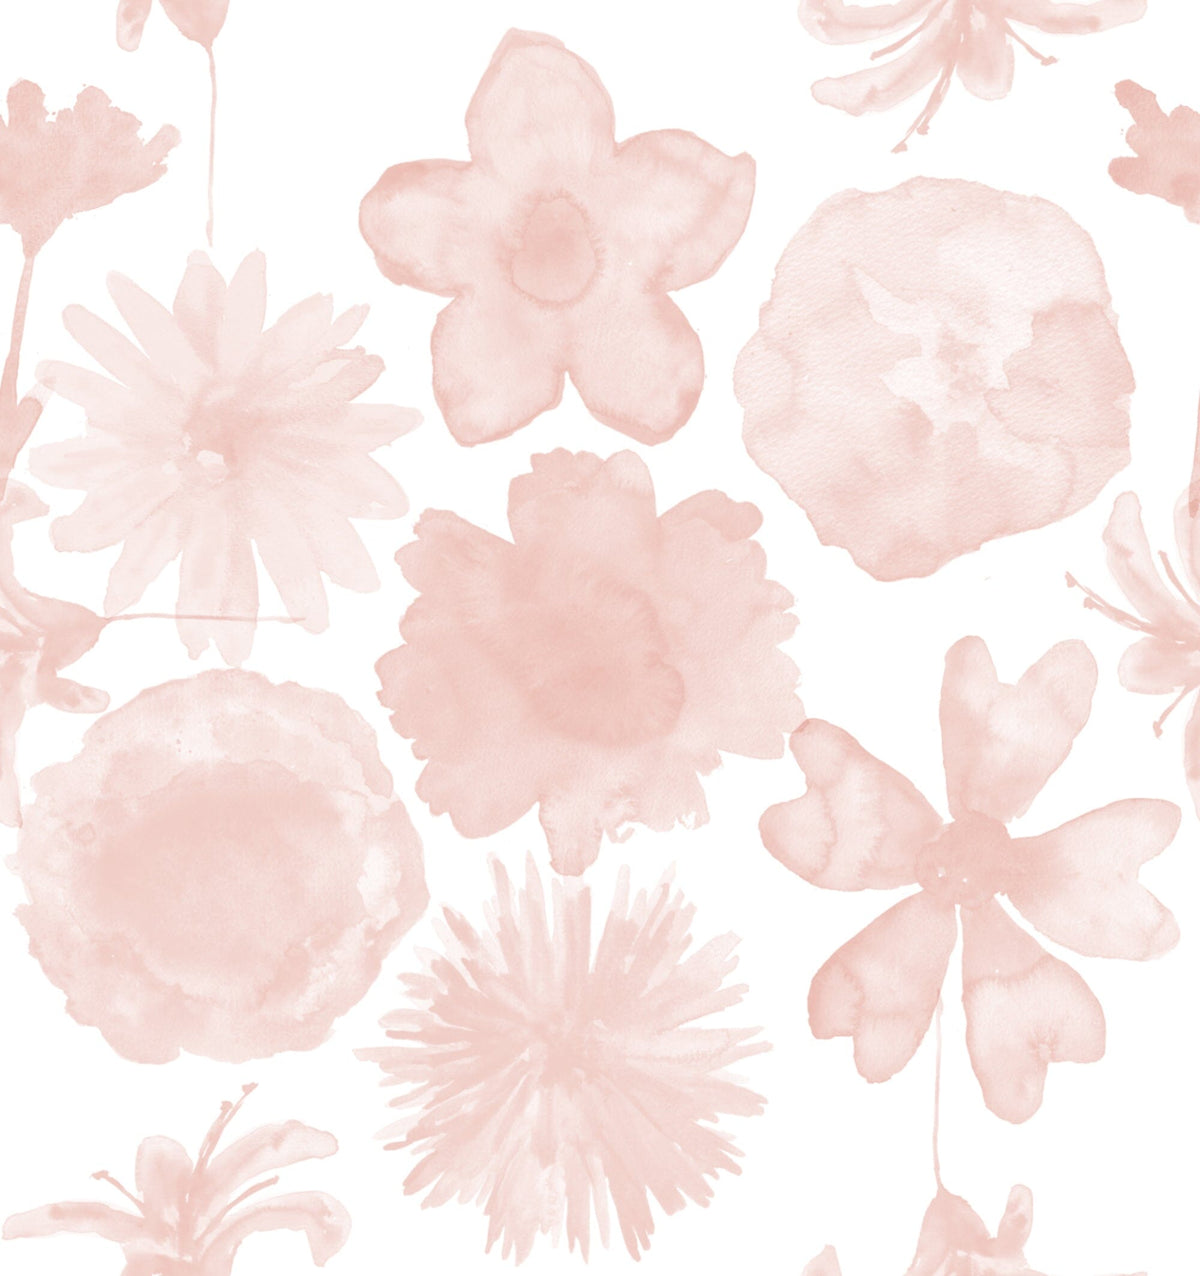 Duvet - Petals Light Pink Bedding, Duvets MWW 